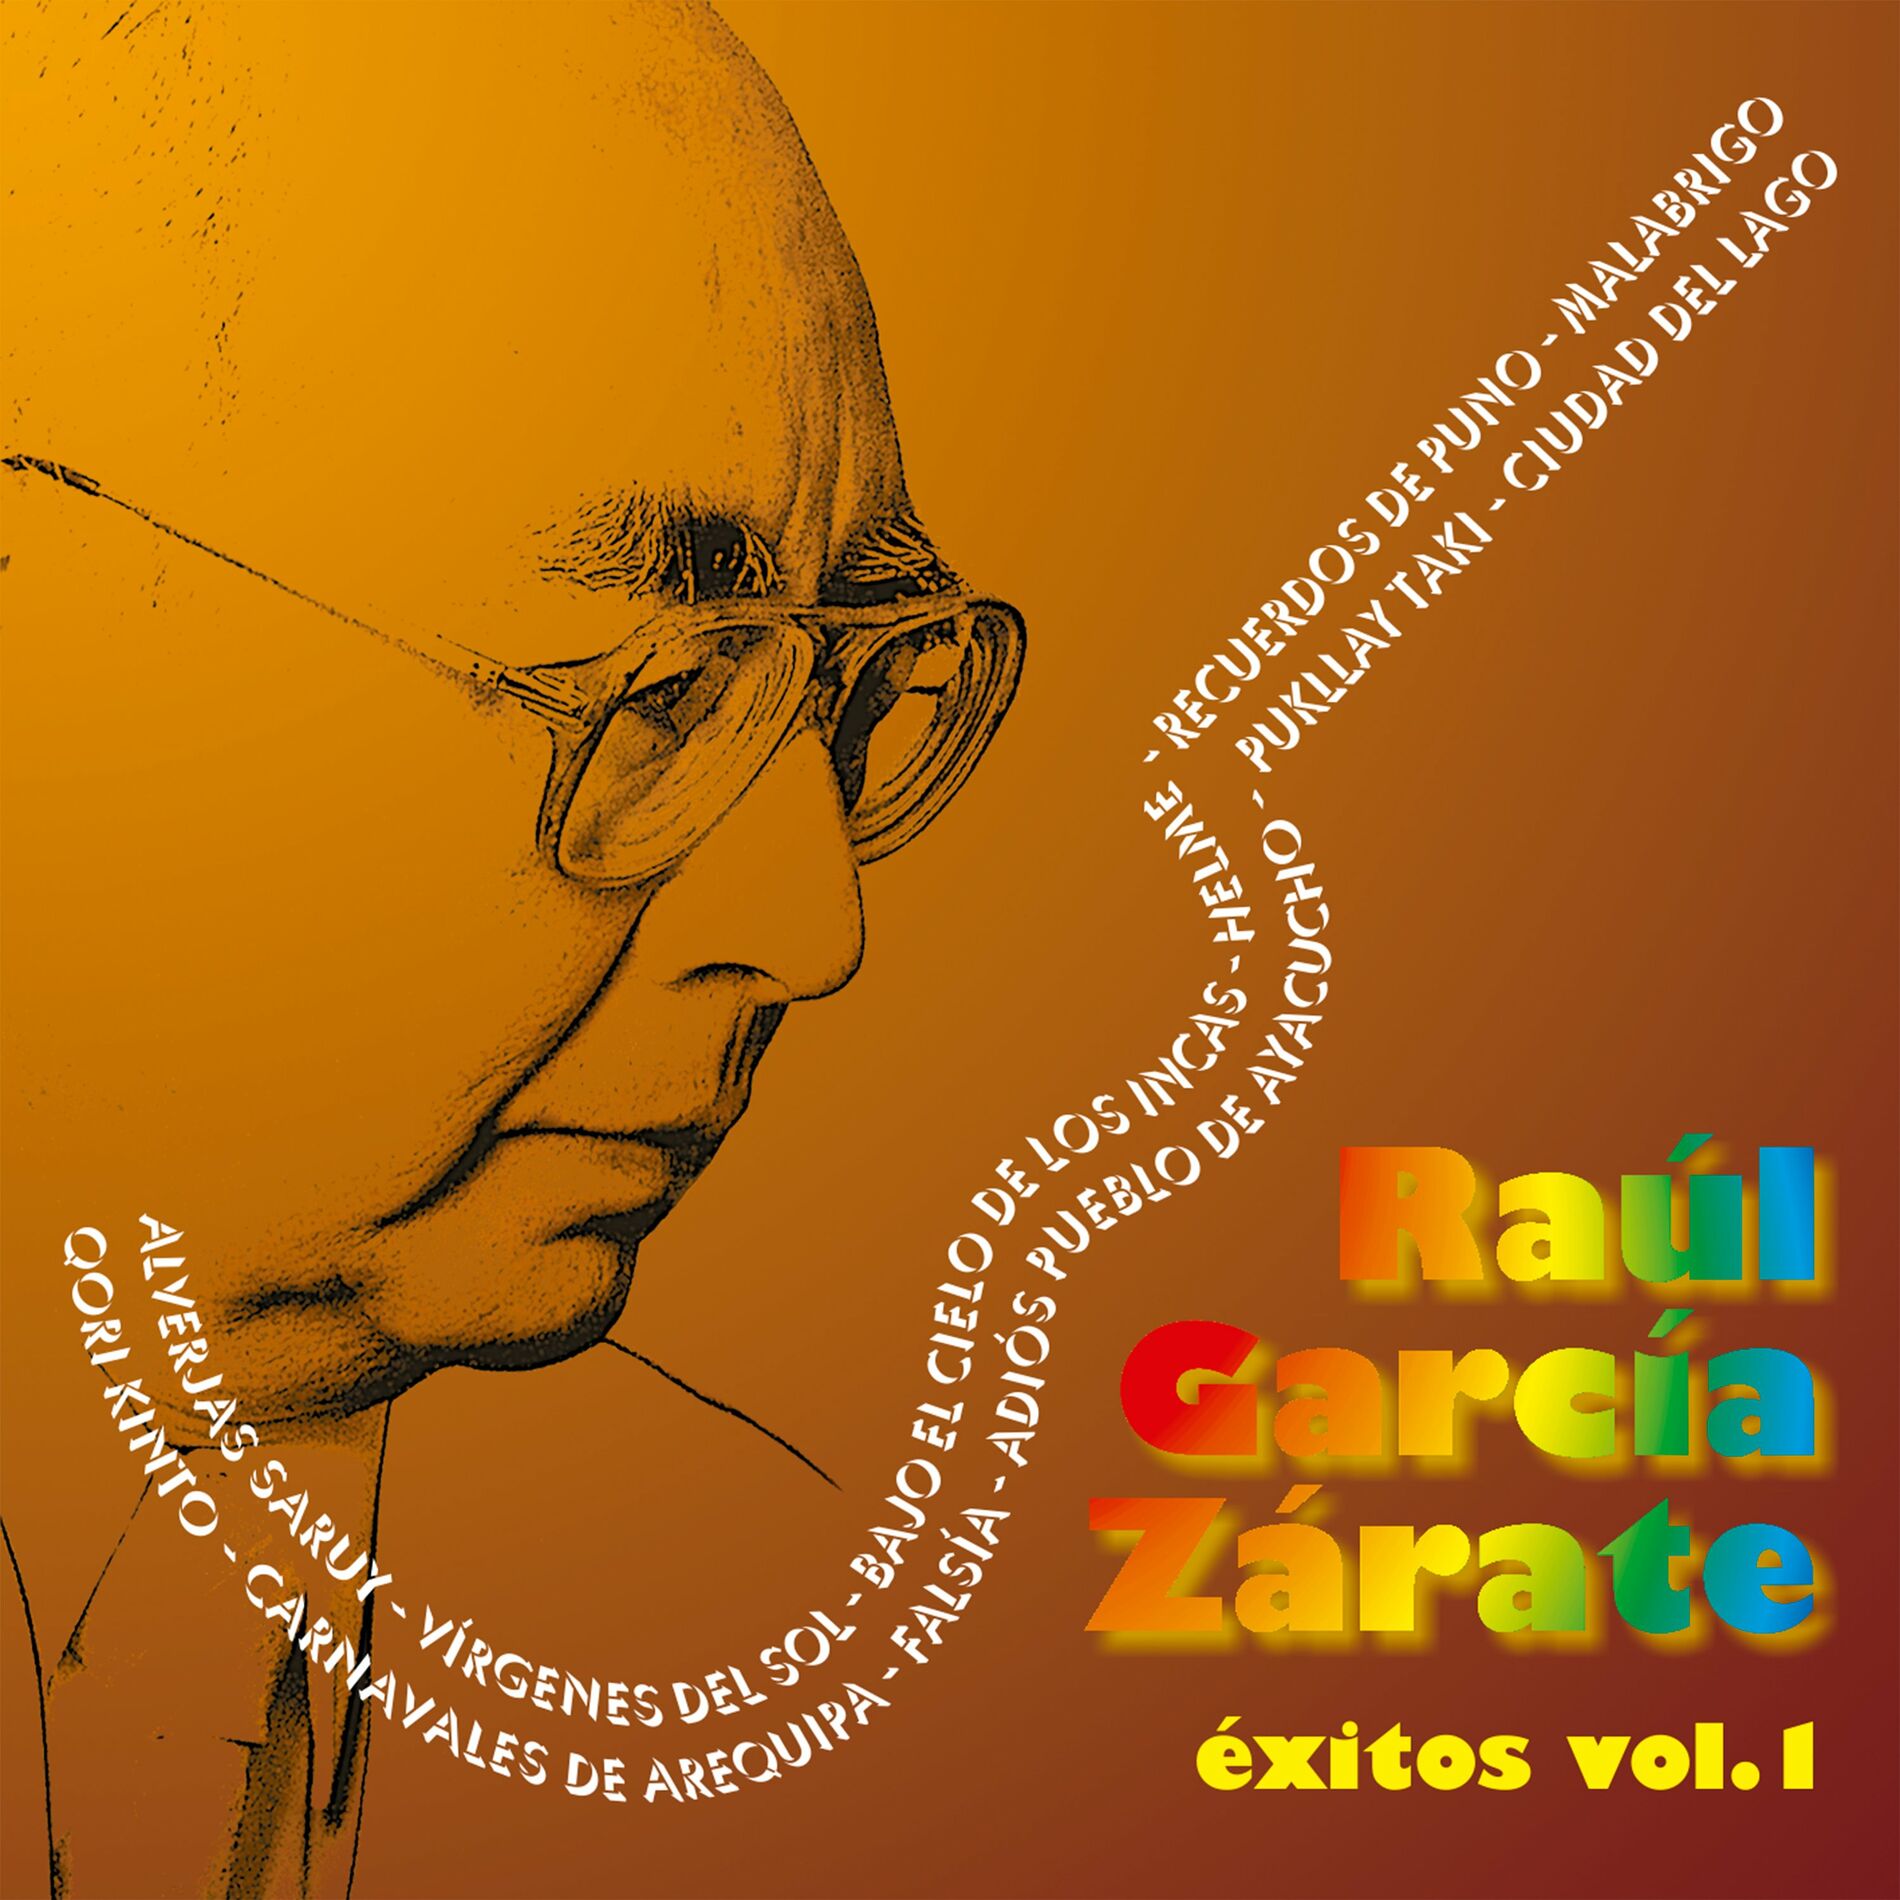 RAÚL GARCÍA ZÁRATE: albums, songs, playlists | Listen on Deezer